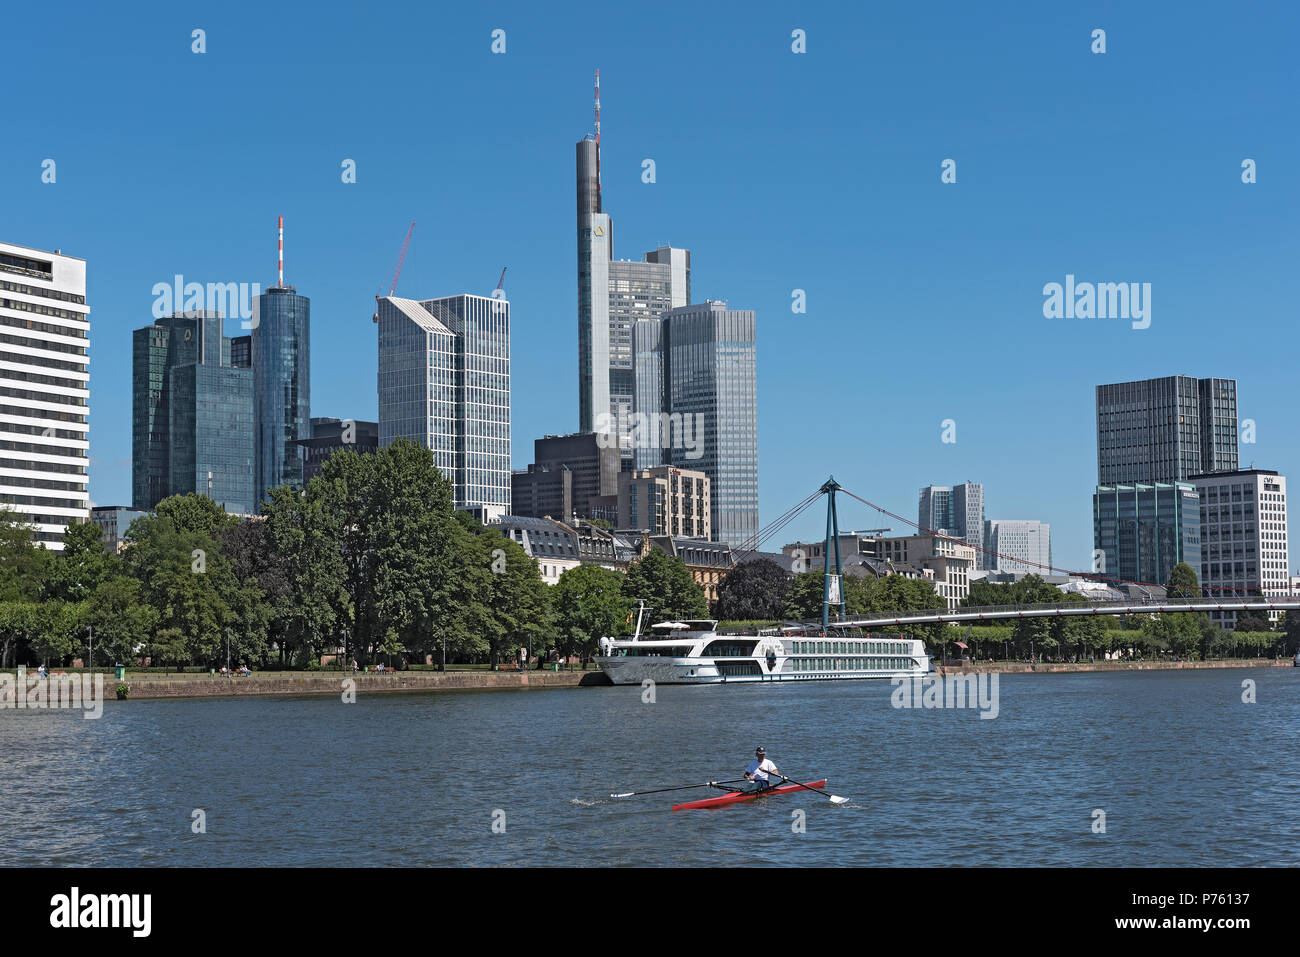 La rameuse en rouge bateau sur la rivière principale en face de la skyline, Francfort, Allemagne Banque D'Images